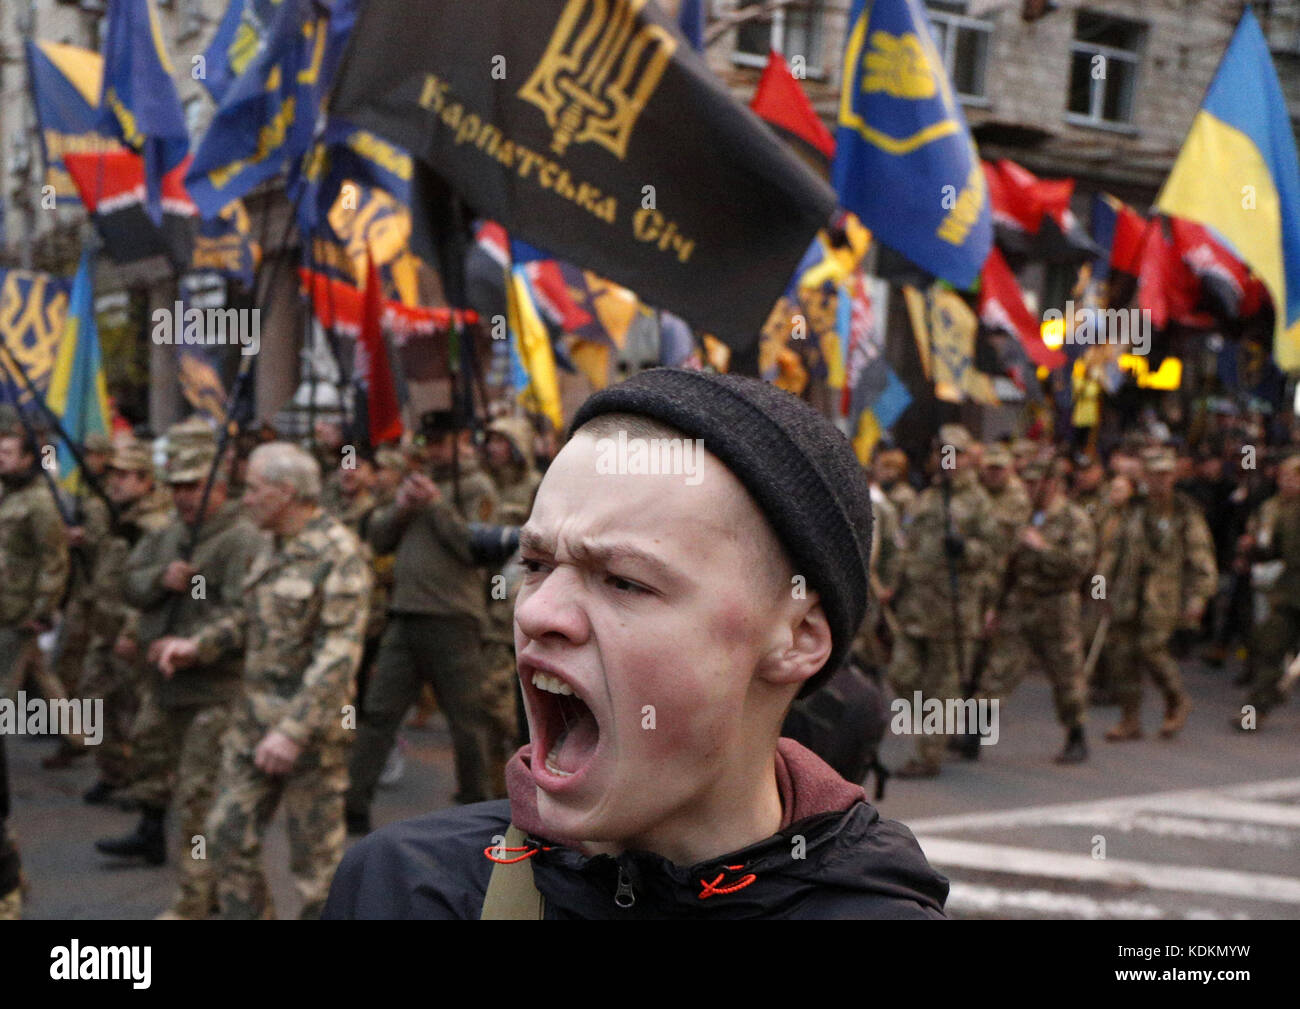 Укр щавший. Украинские националисты. Украинские нацисты. Хохлы националисты. Лицо украинца.